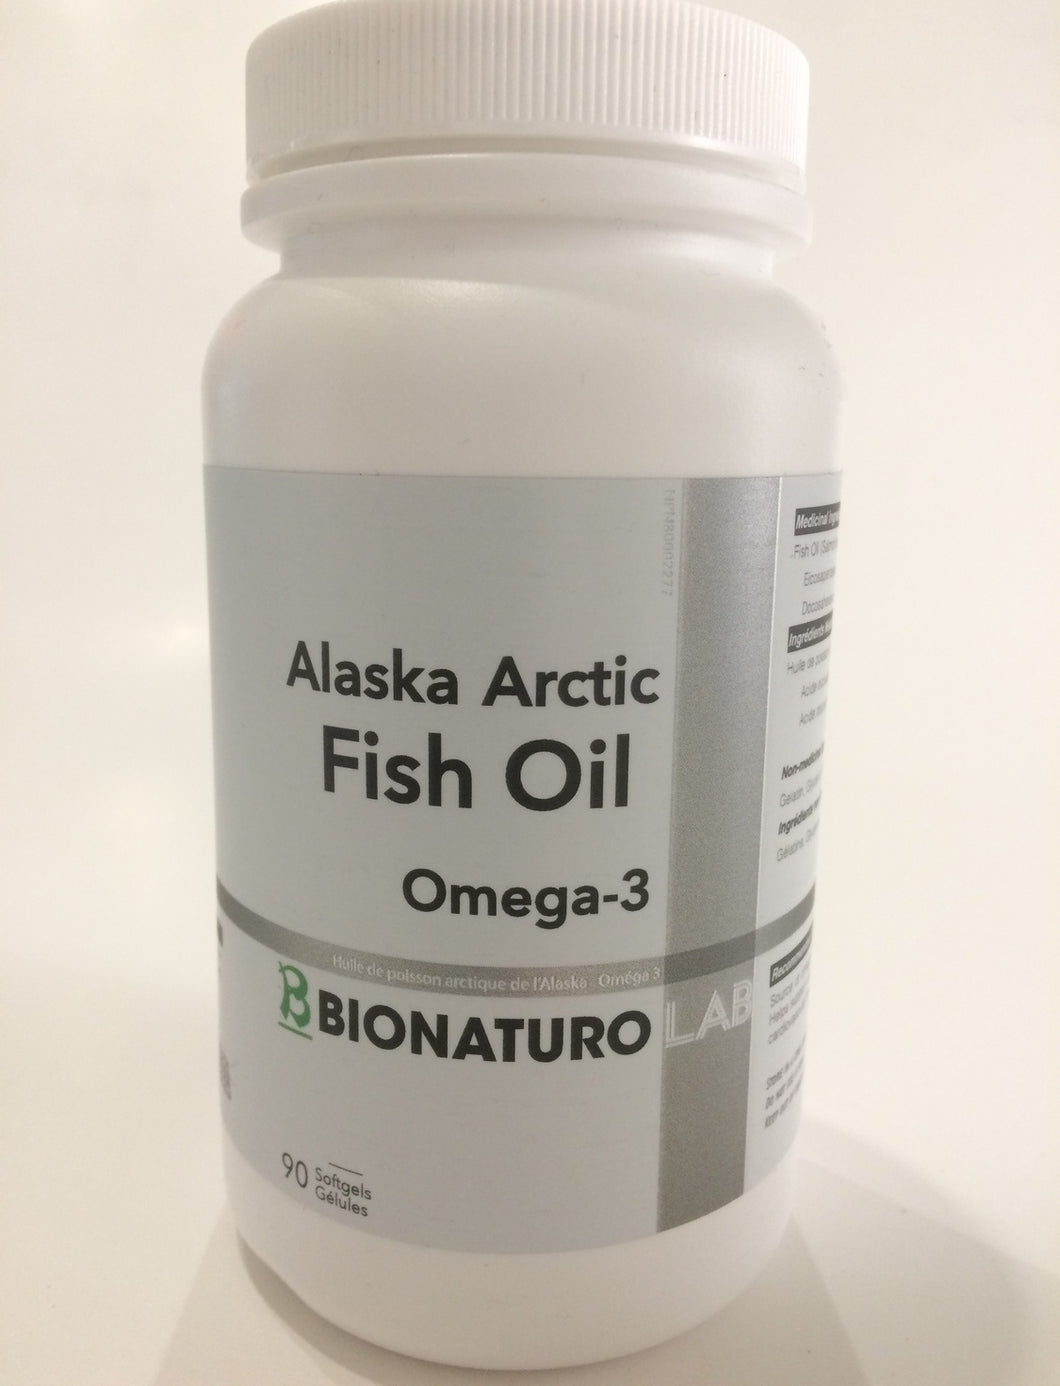 Alaska Arctic Fish Oil Omega-3 (90 Softgels)